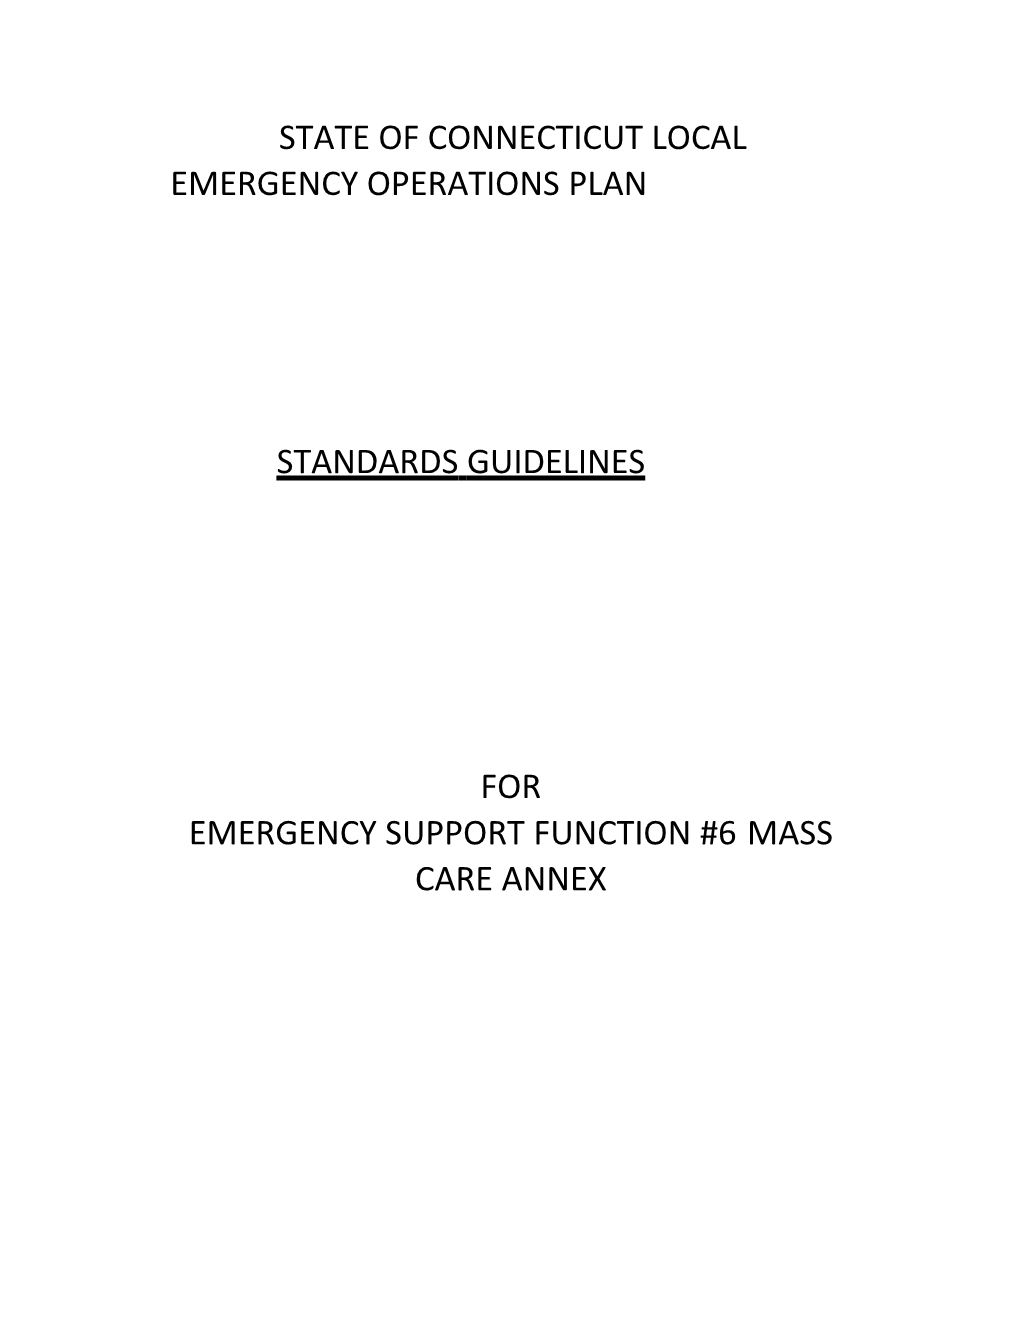 LEOP ESF 6 MASS CARE Standards Guidelines V 1.0